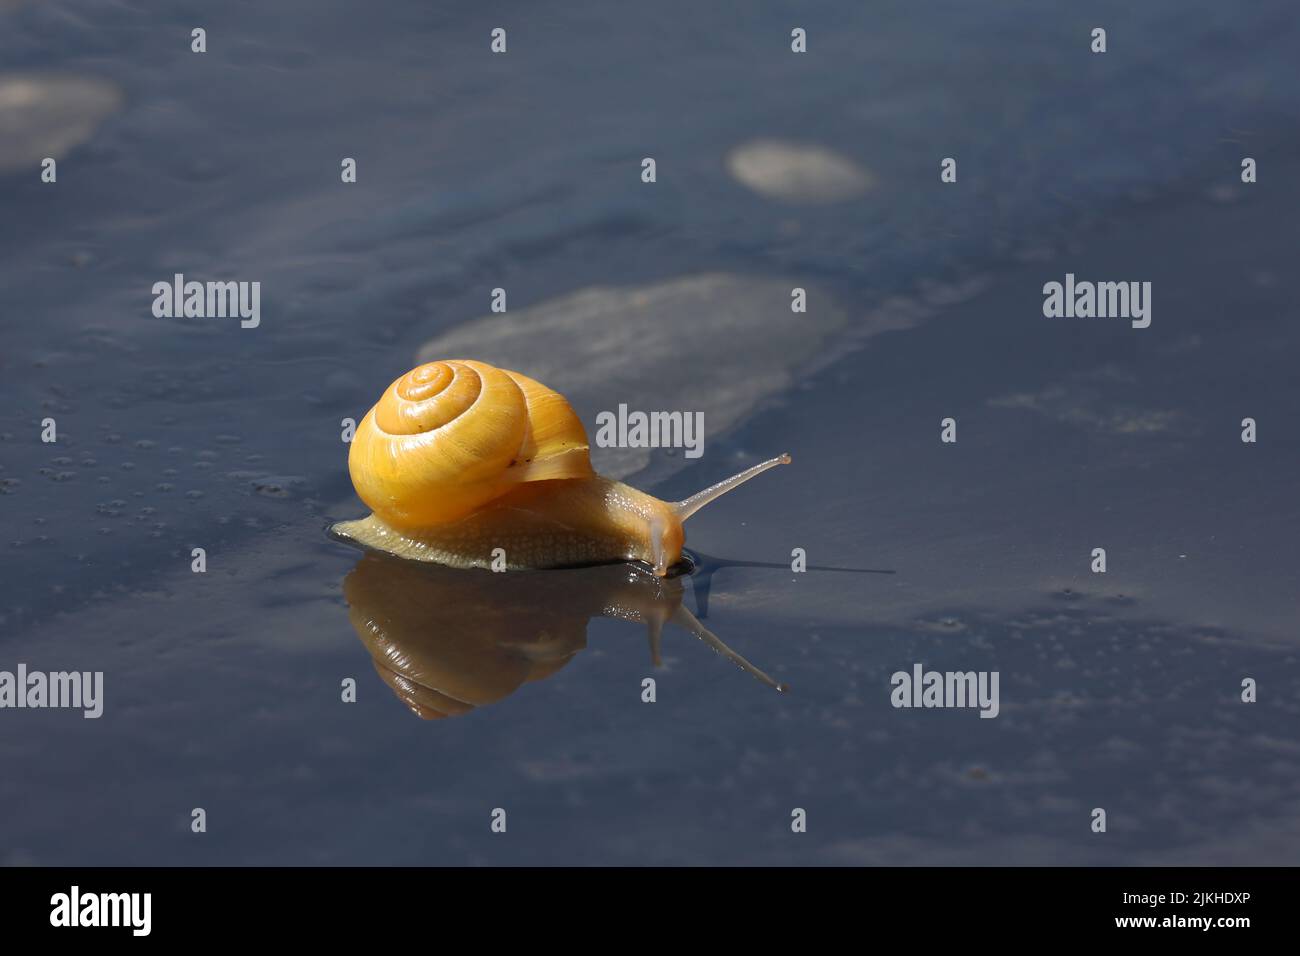 L'escargot rampent lentement sur une surface humide. Banque D'Images